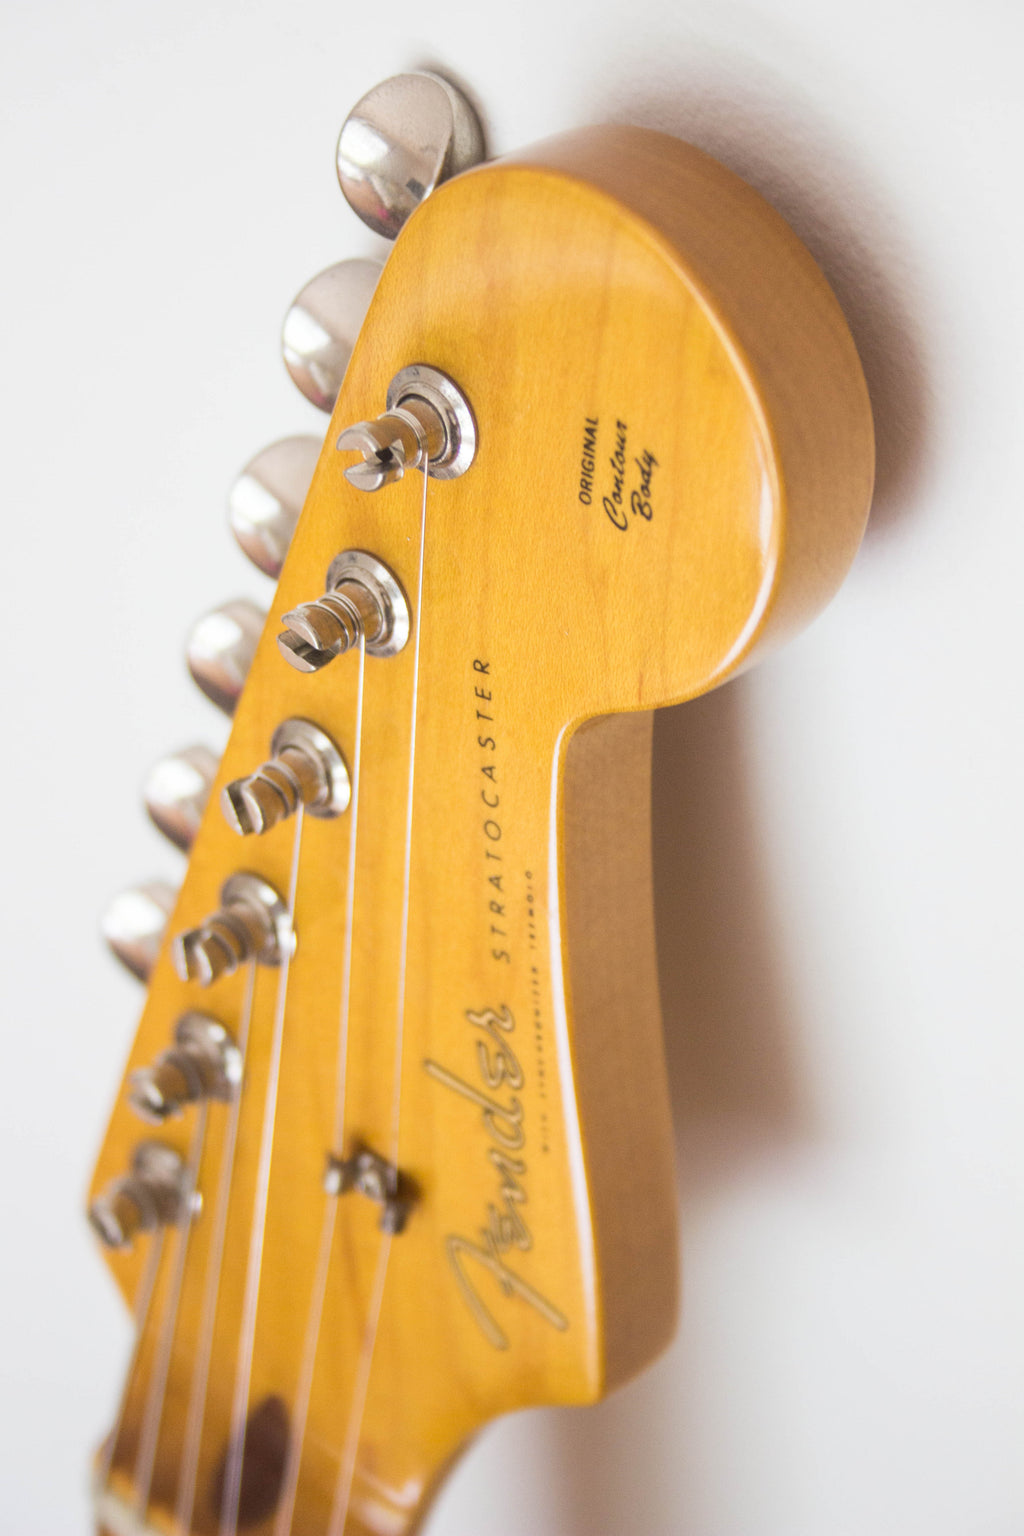 Fender Japan '57 Reissue Stratocaster ST57-70TX US Blonde 2004-05